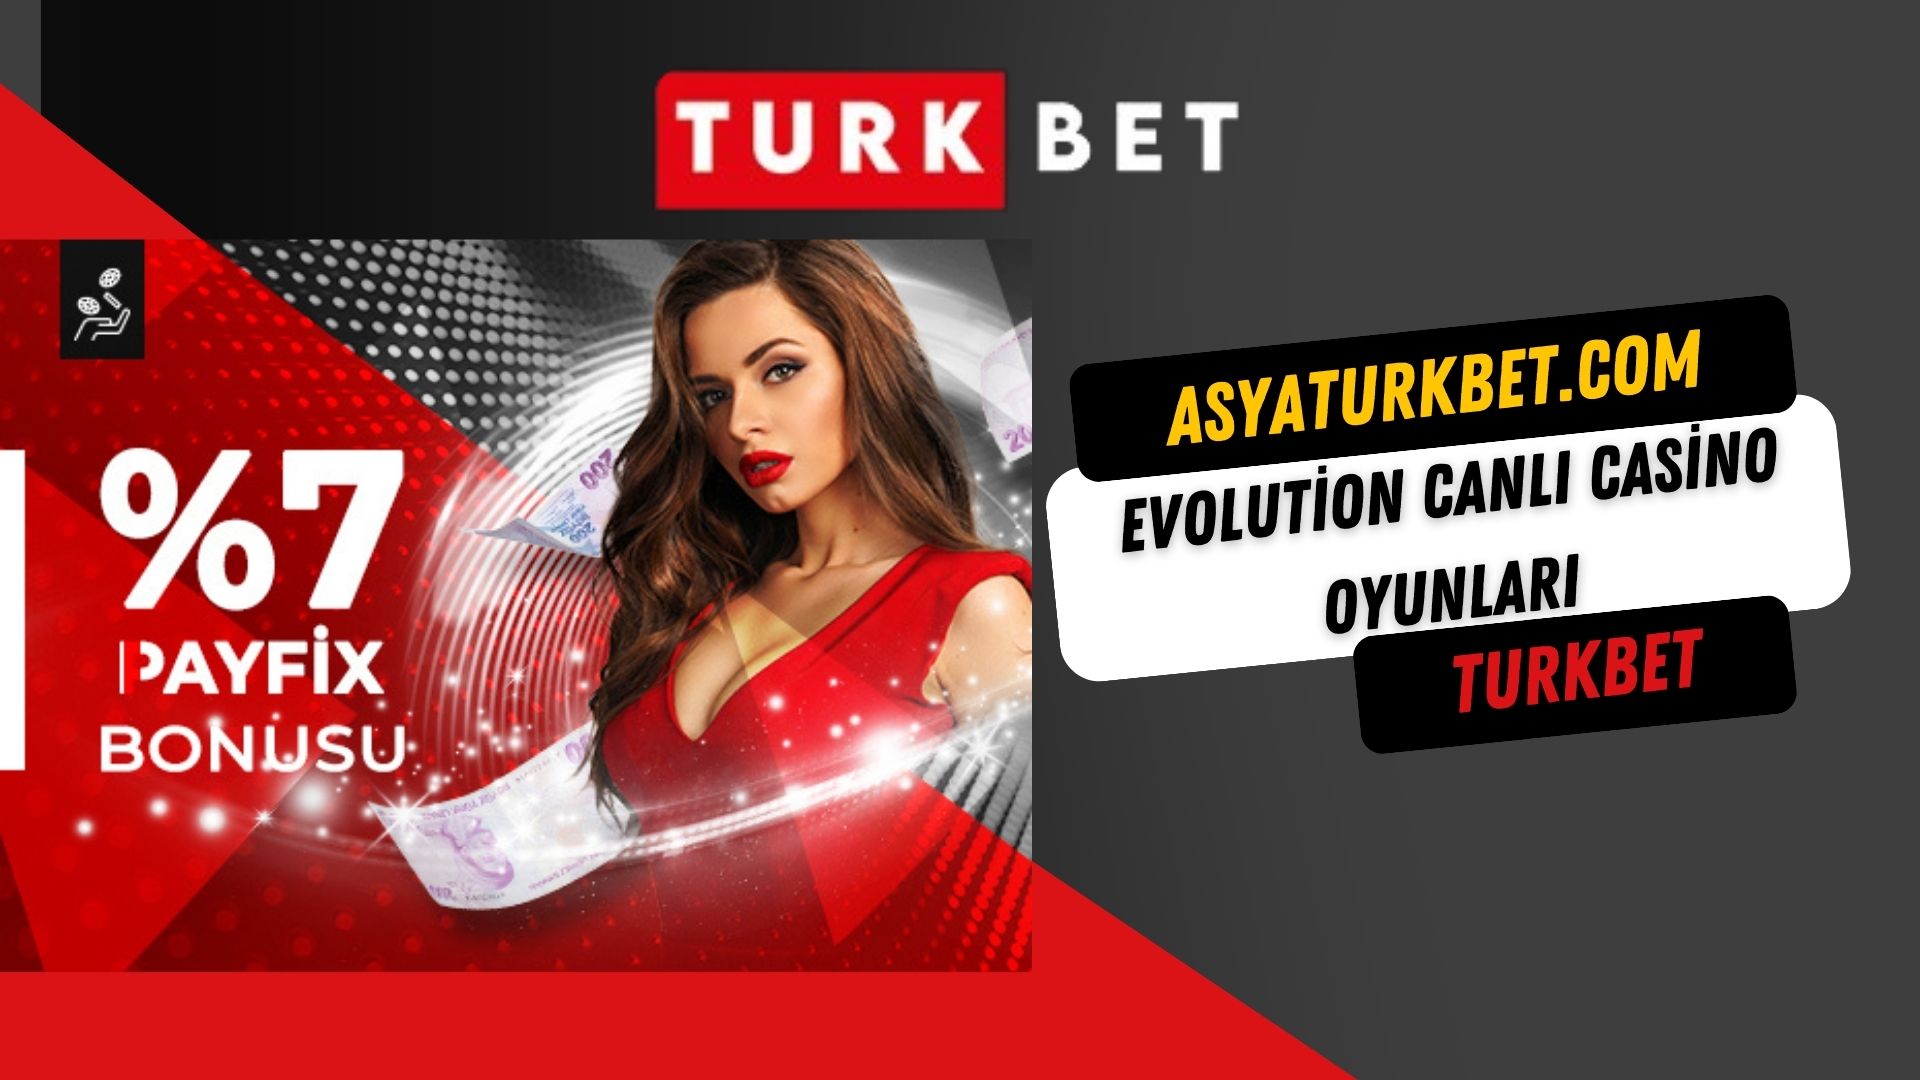 Evolution Canlı Casino Oyunları Turkbet’te